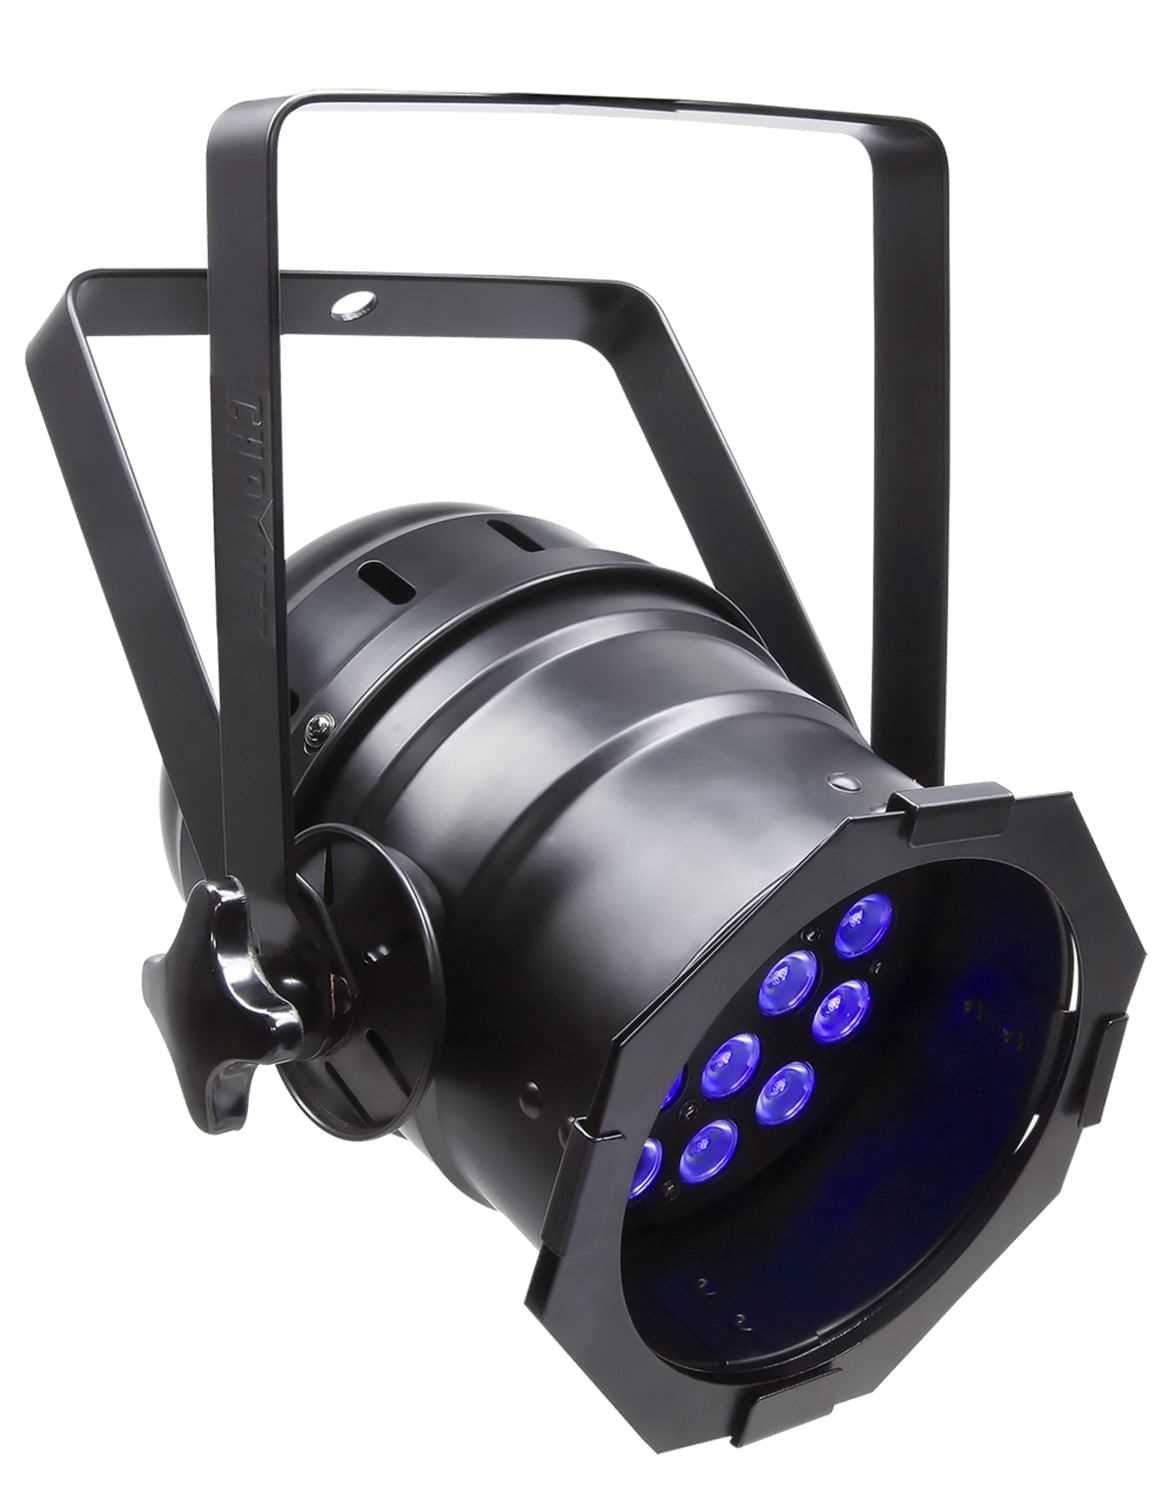 Chauvet LED-PAR-38-18UVB LED DMX Black Light Par - PSSL ProSound and Stage Lighting